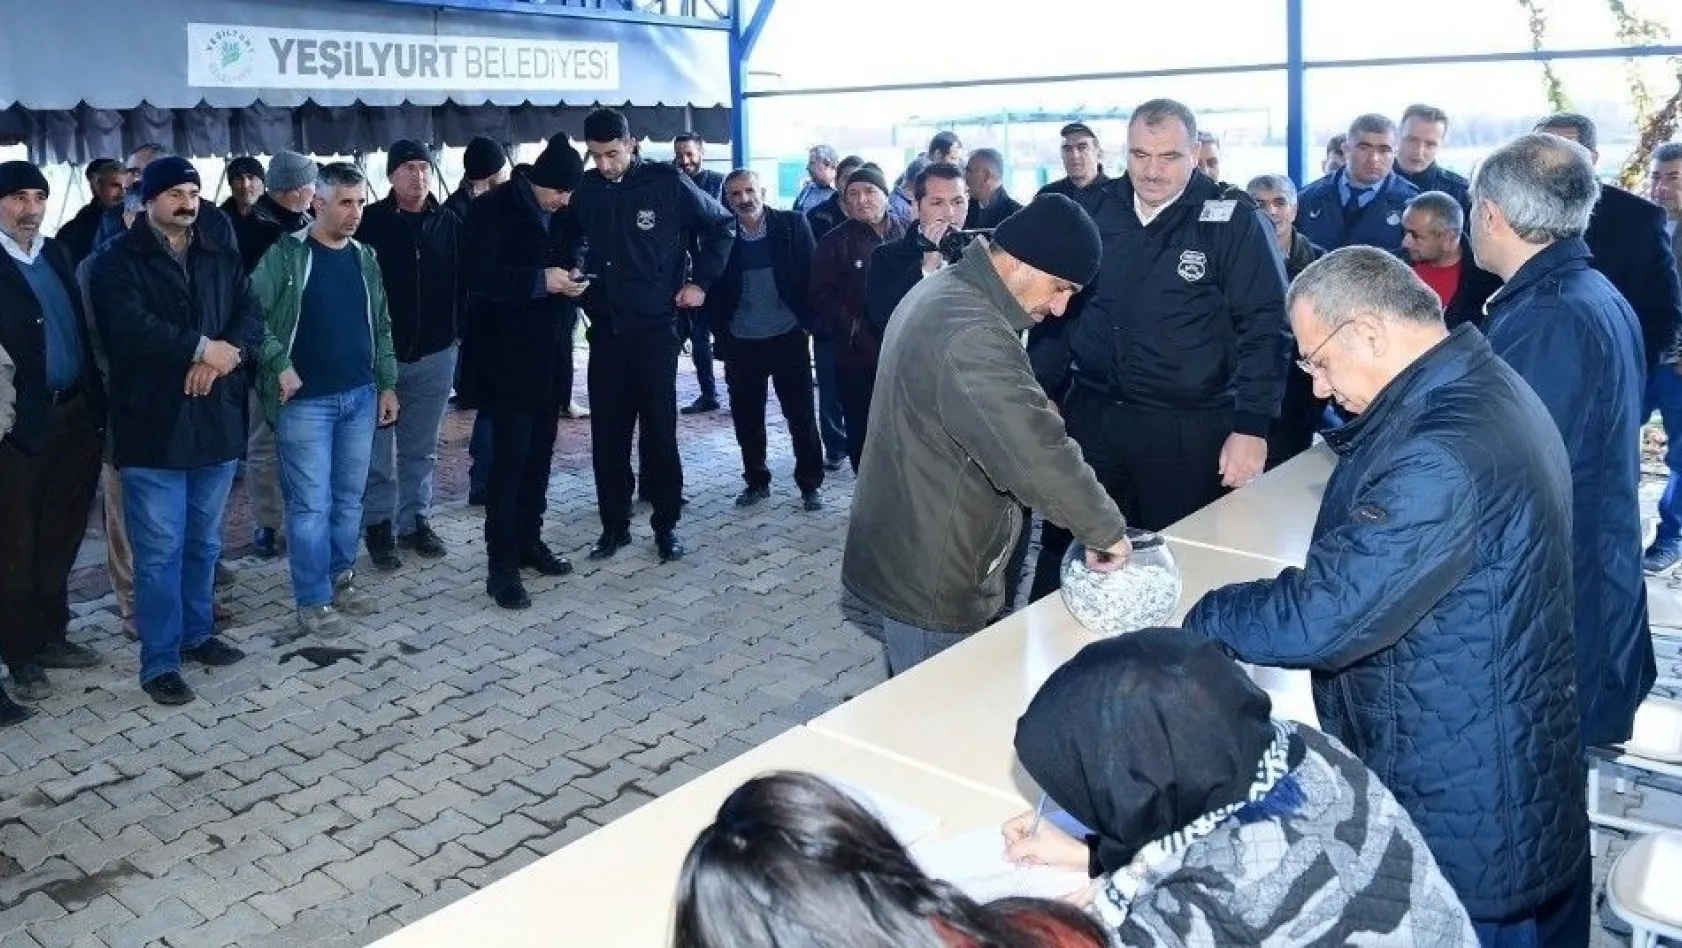 Yeşilyurt Belediyesi TYÇP kapsamında 100 personel alındı
